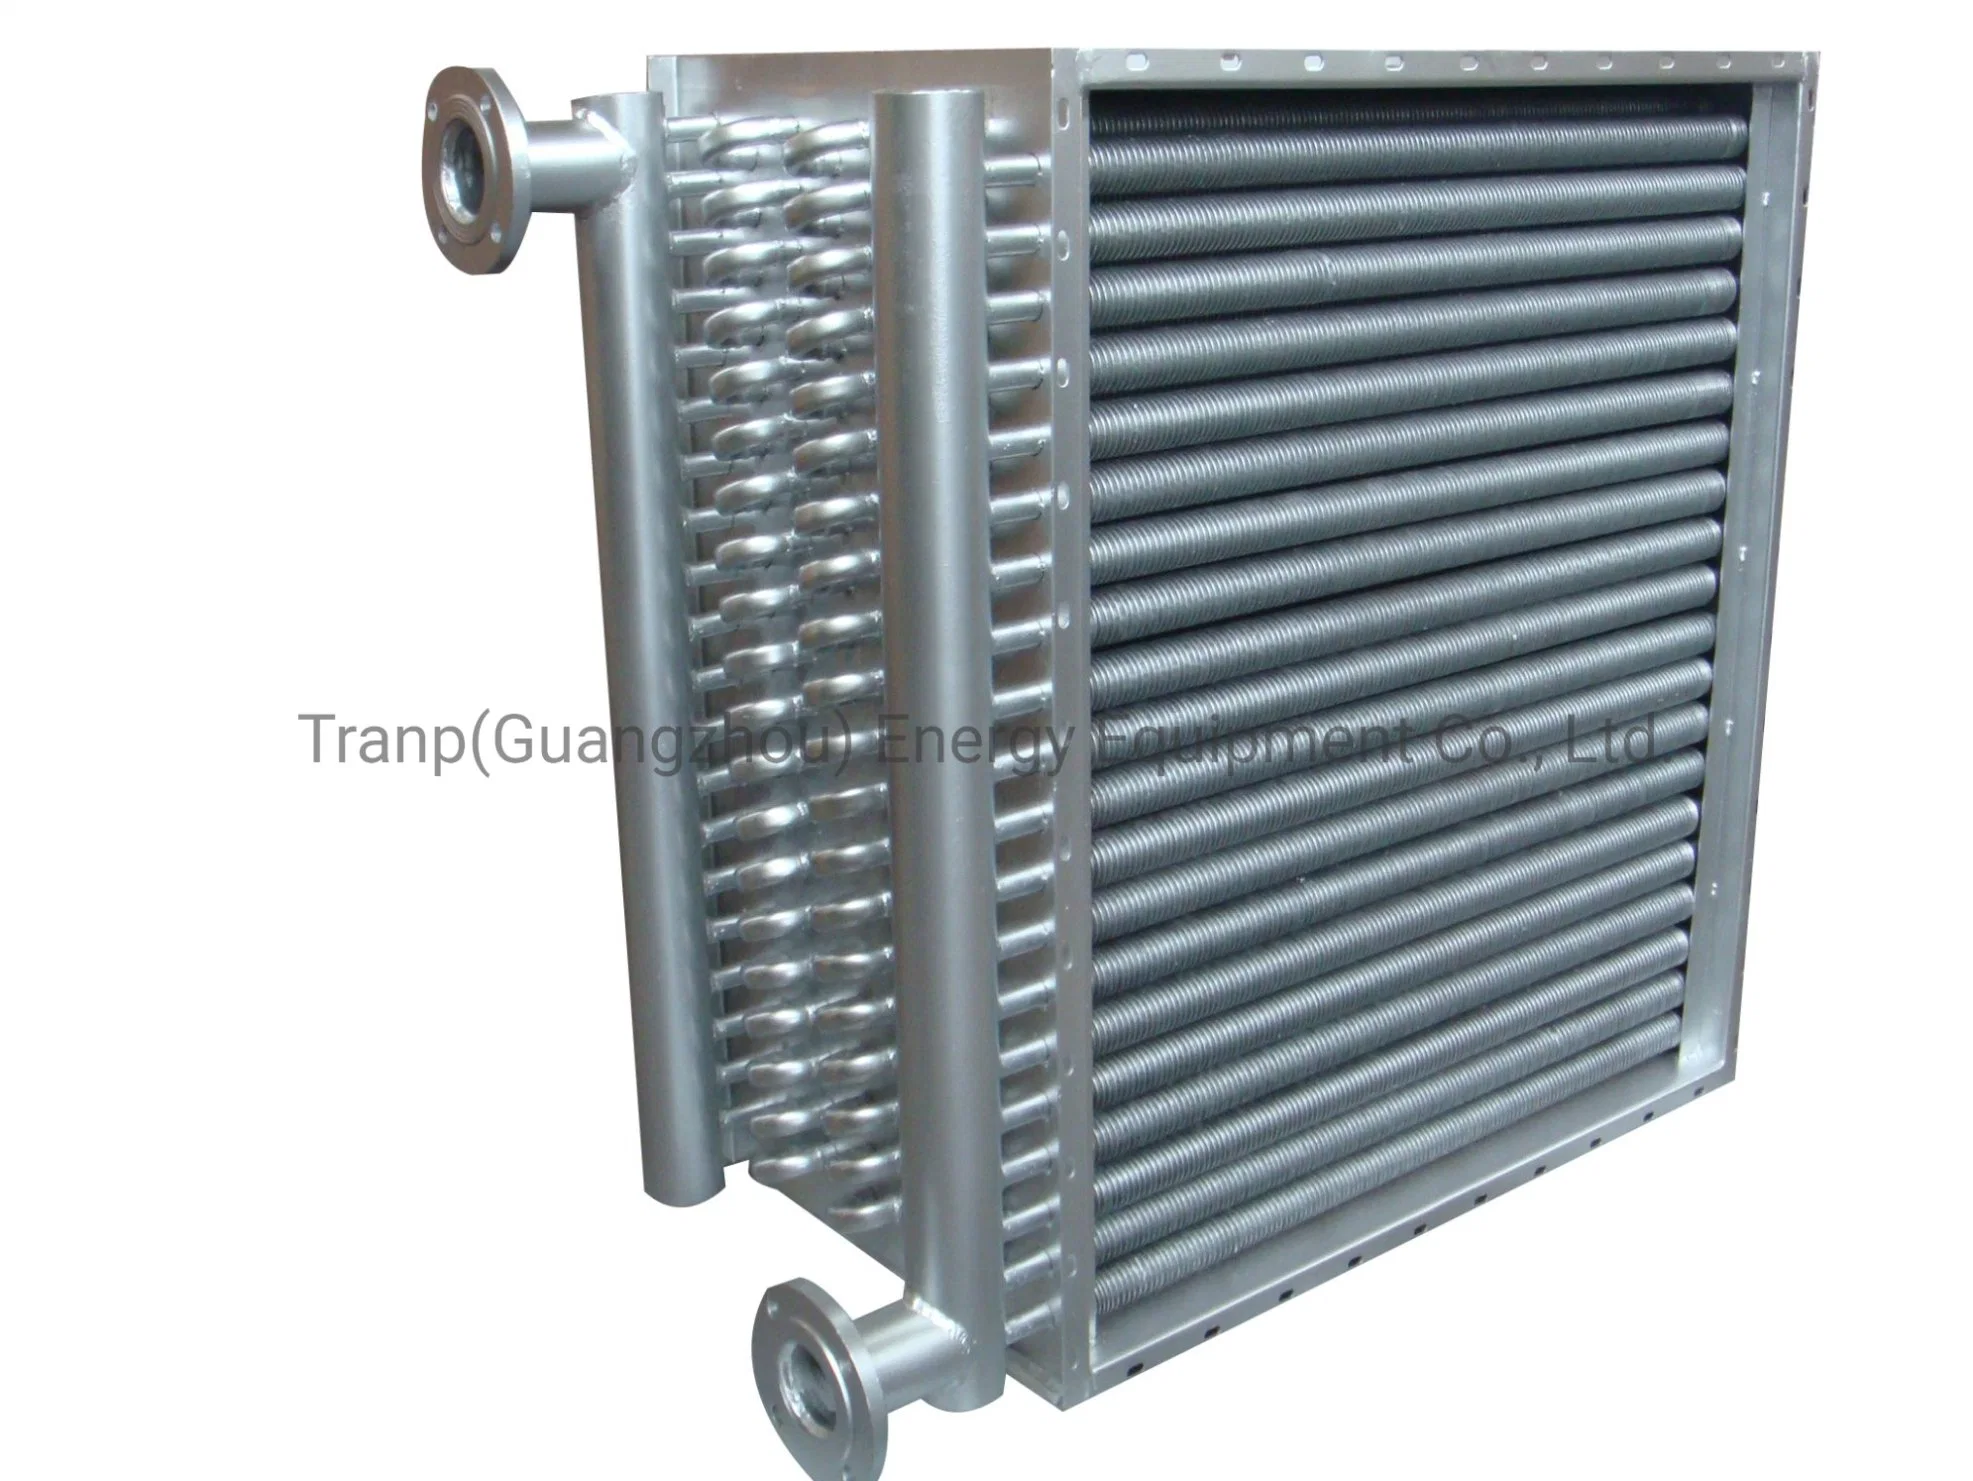 Radiador de aleta espiral de intercambiador de calor de calefacción y refrigeración Para la industria